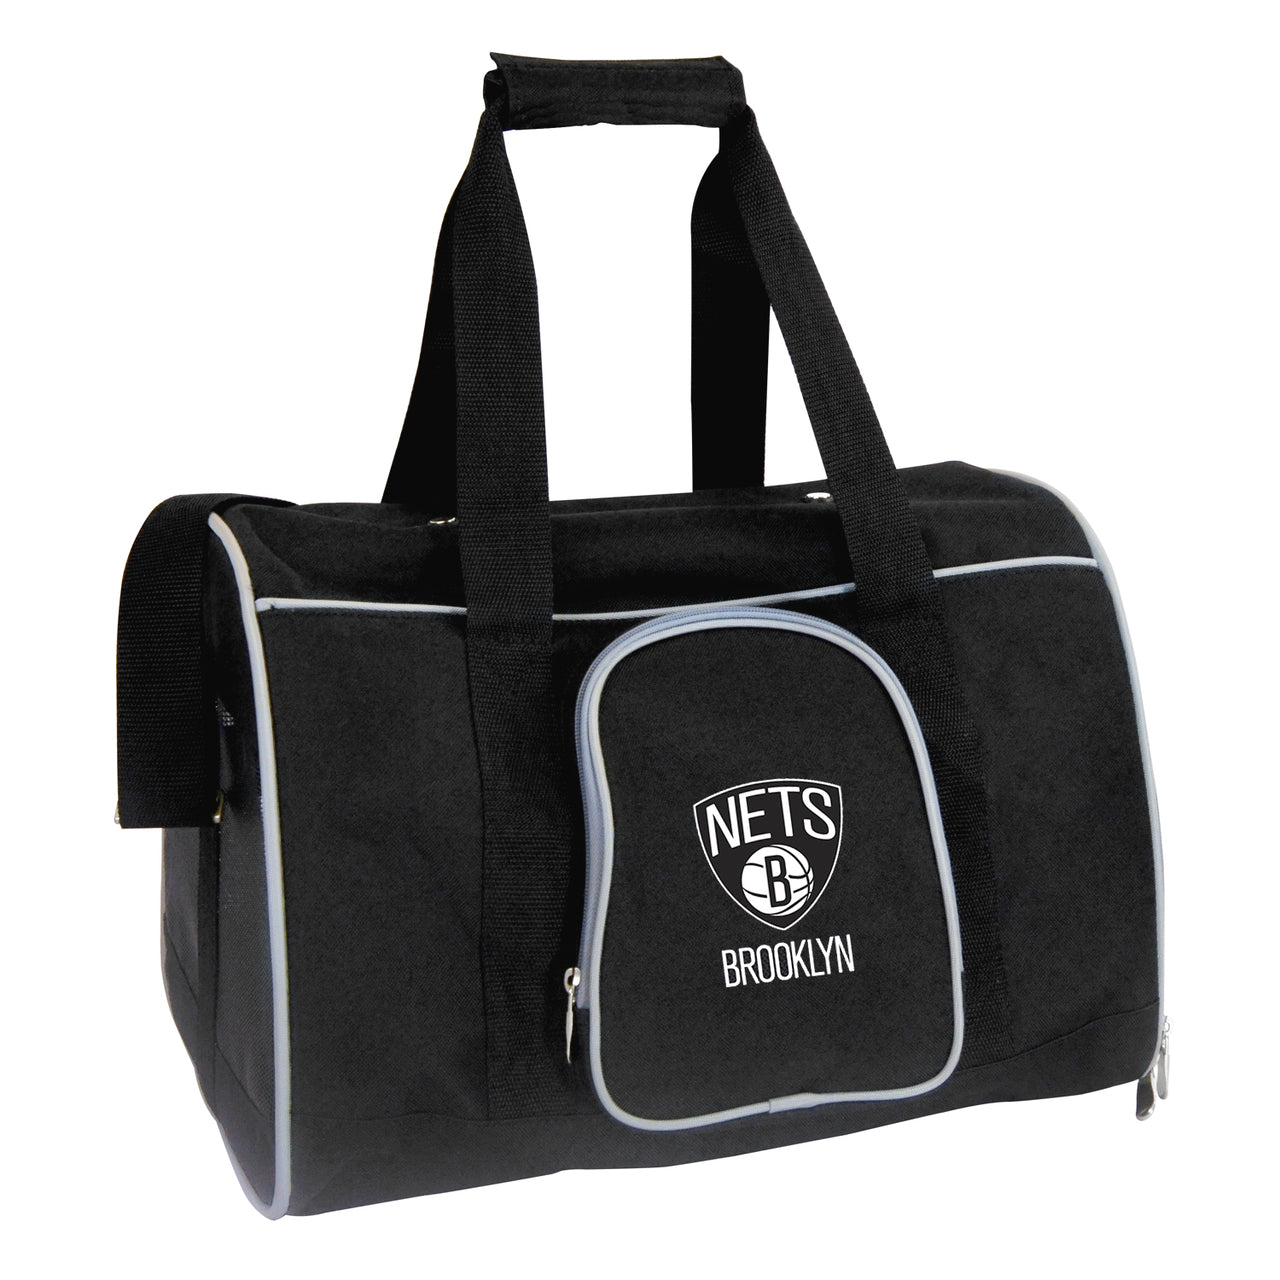 Brooklyn Nets 16" Premium Pet Carrier